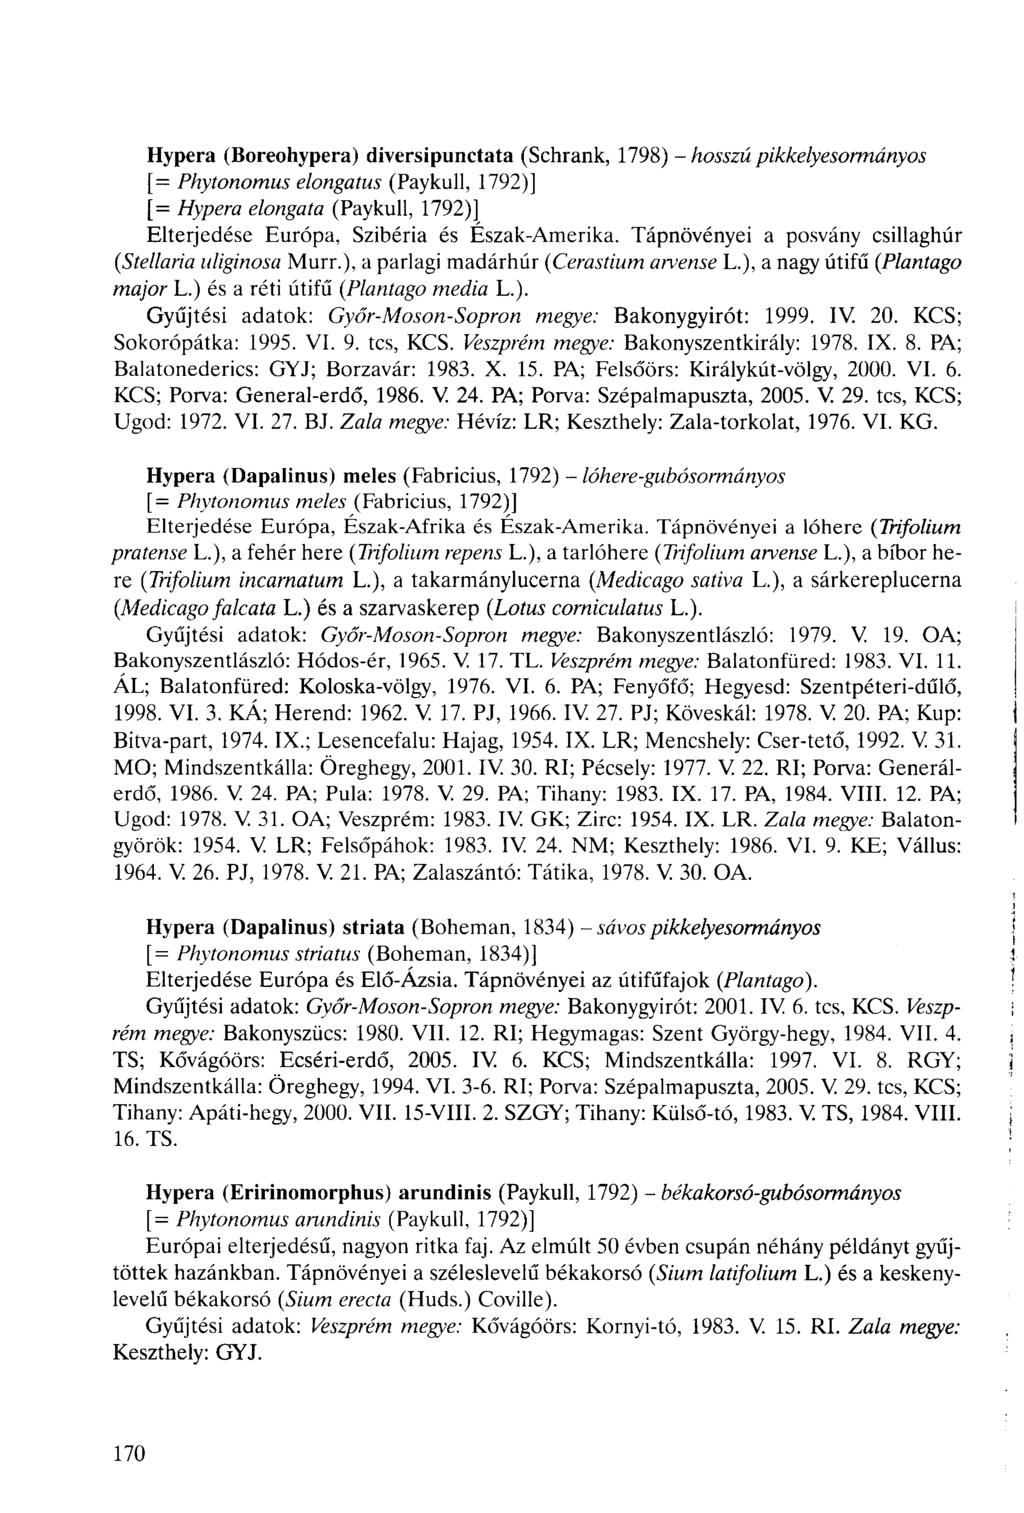 Hypera (Boreohypera) diversipunctata (Schrank, 1798) - hosszú pikkelyesormányos [= Phytonomus elongatus (Paykull, 1792)] [= Hypera elongata (Paykull, 1792)] Elterjedése Európa, Szibéria és